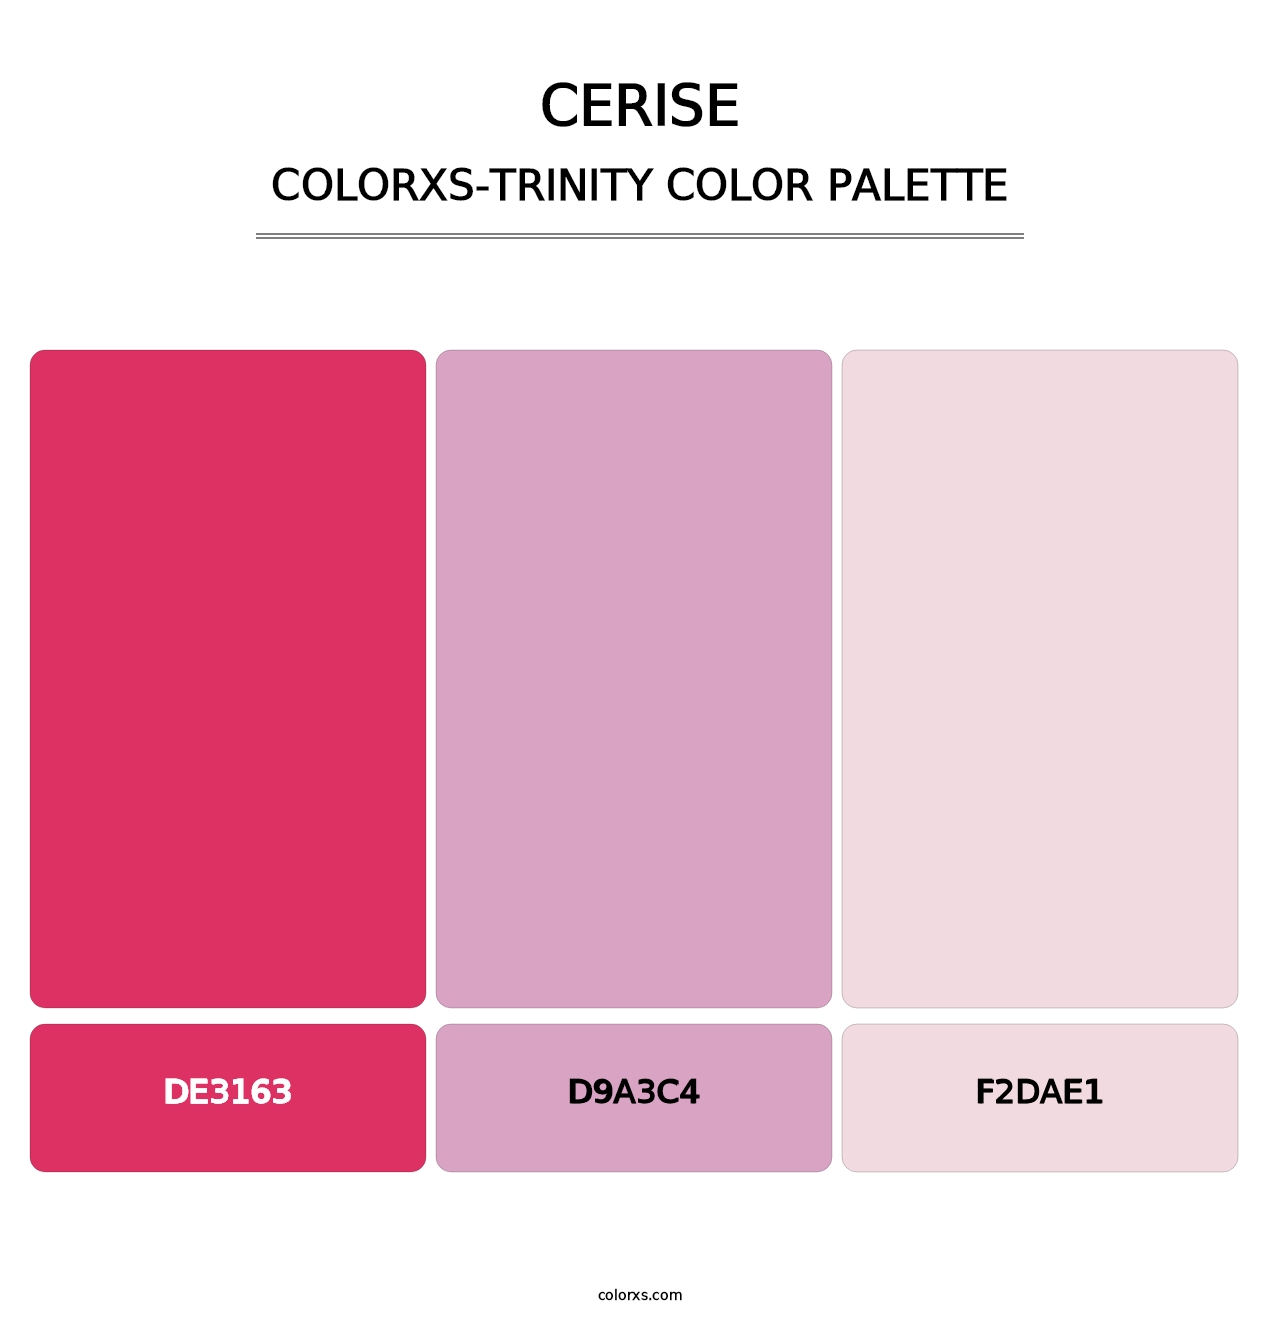 Cerise - Colorxs Trinity Palette